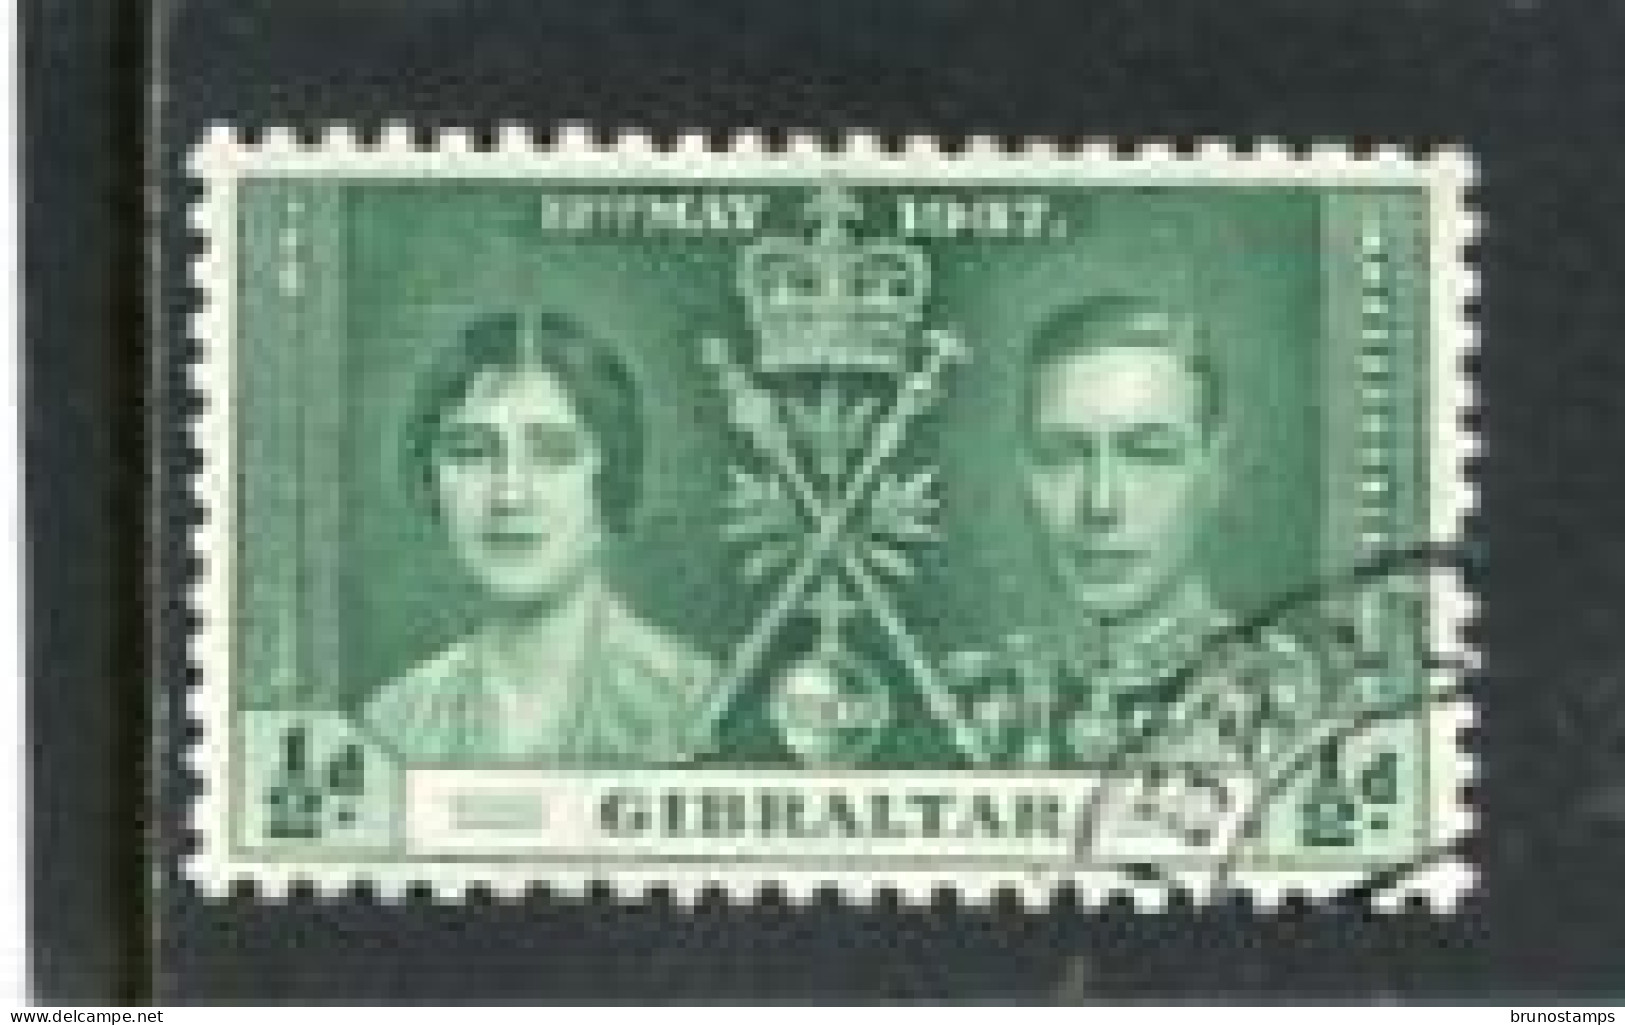 GIBRALTAR - 1937  1/2d  CORONATION  FINE USED - Gibraltar